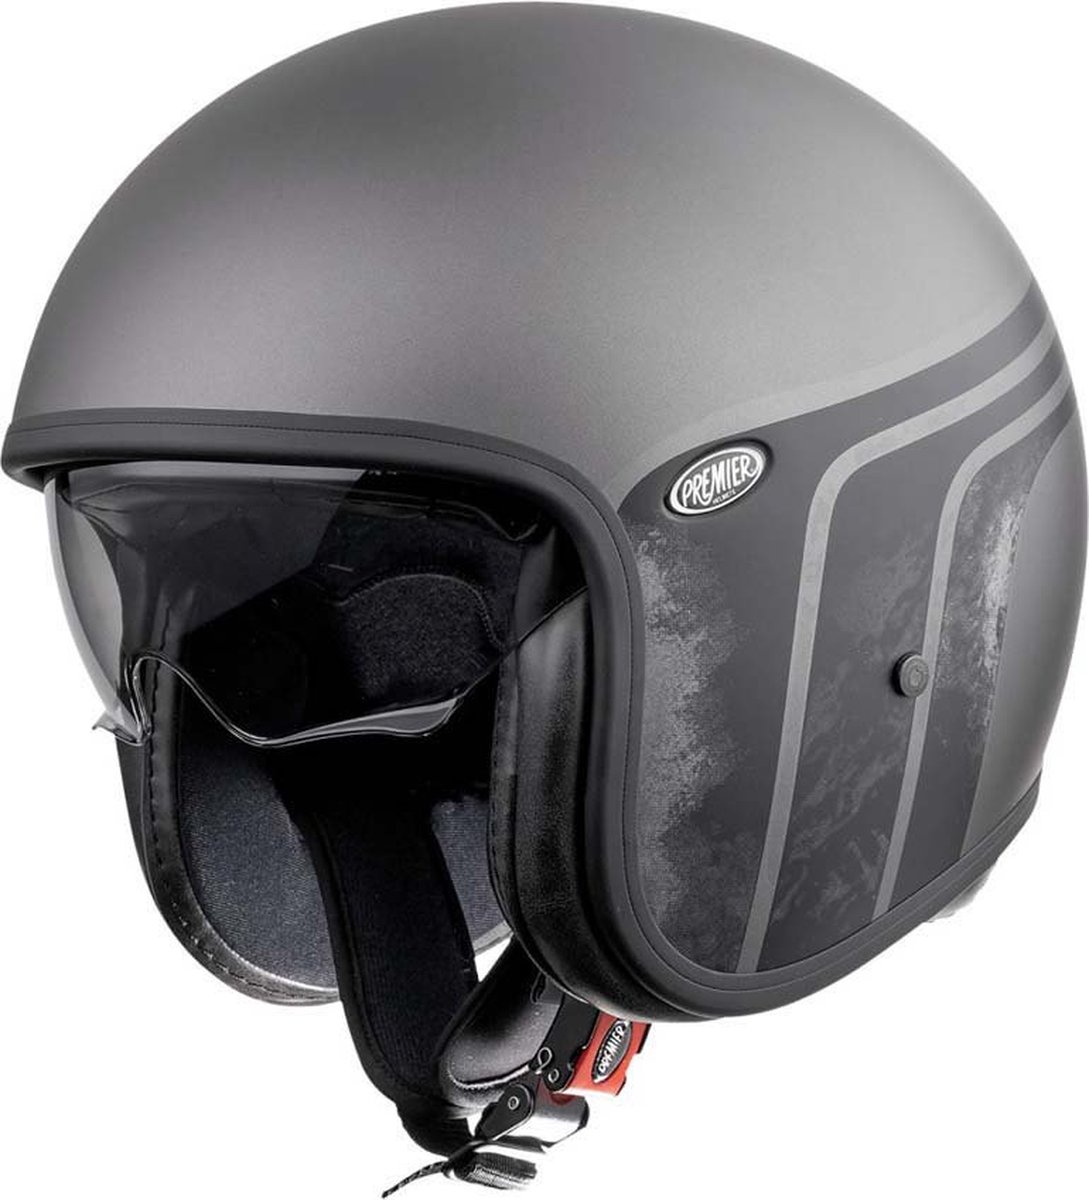 Premier Helmets 23 Vintage Btr 17 Bm 22.06 Jet Helm Zwart,Grijs M